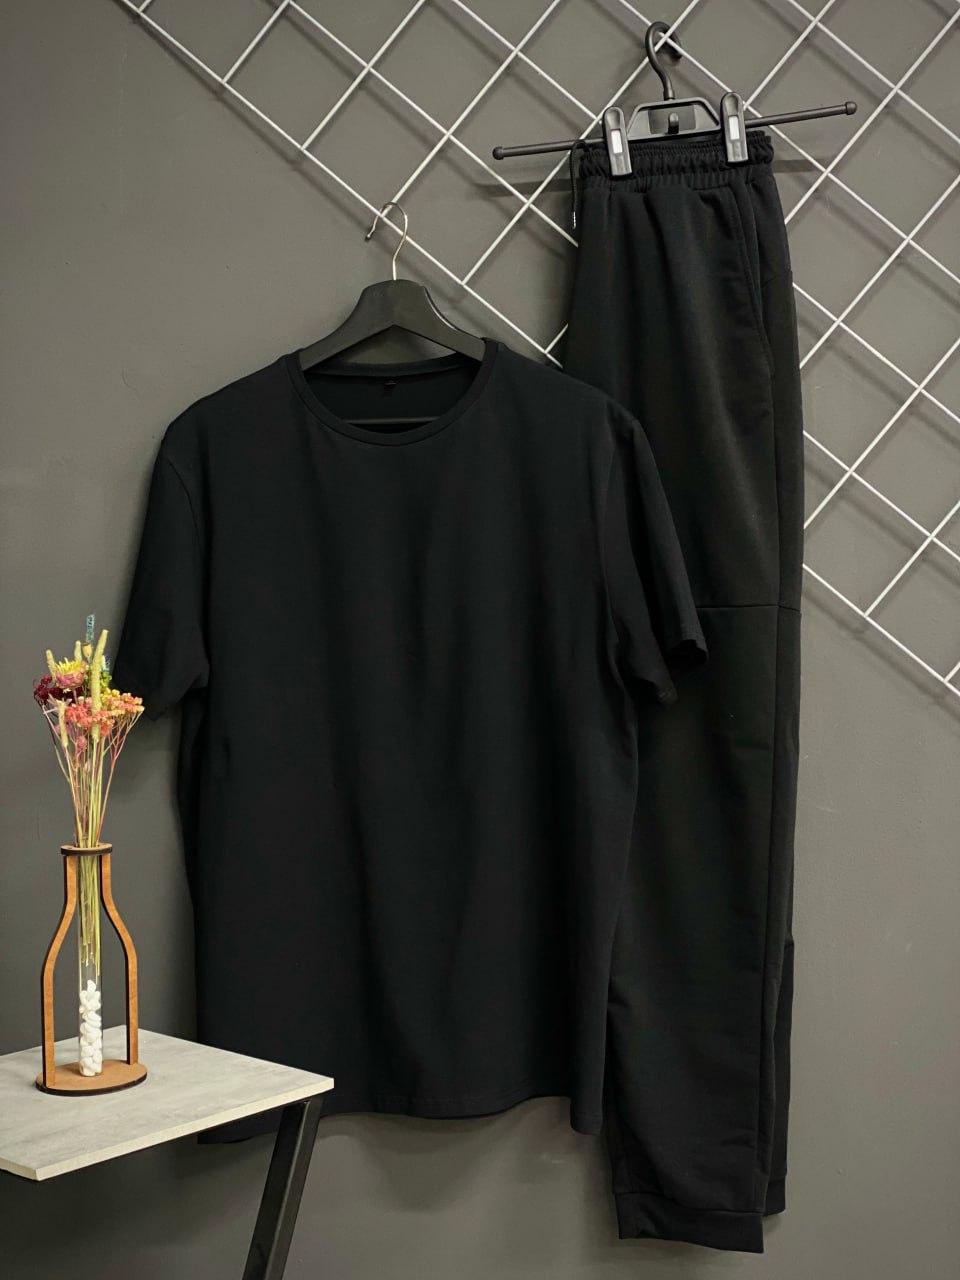 Чоловічий спортивний костюм штани чорні (двохнитка) + футболка чорна.